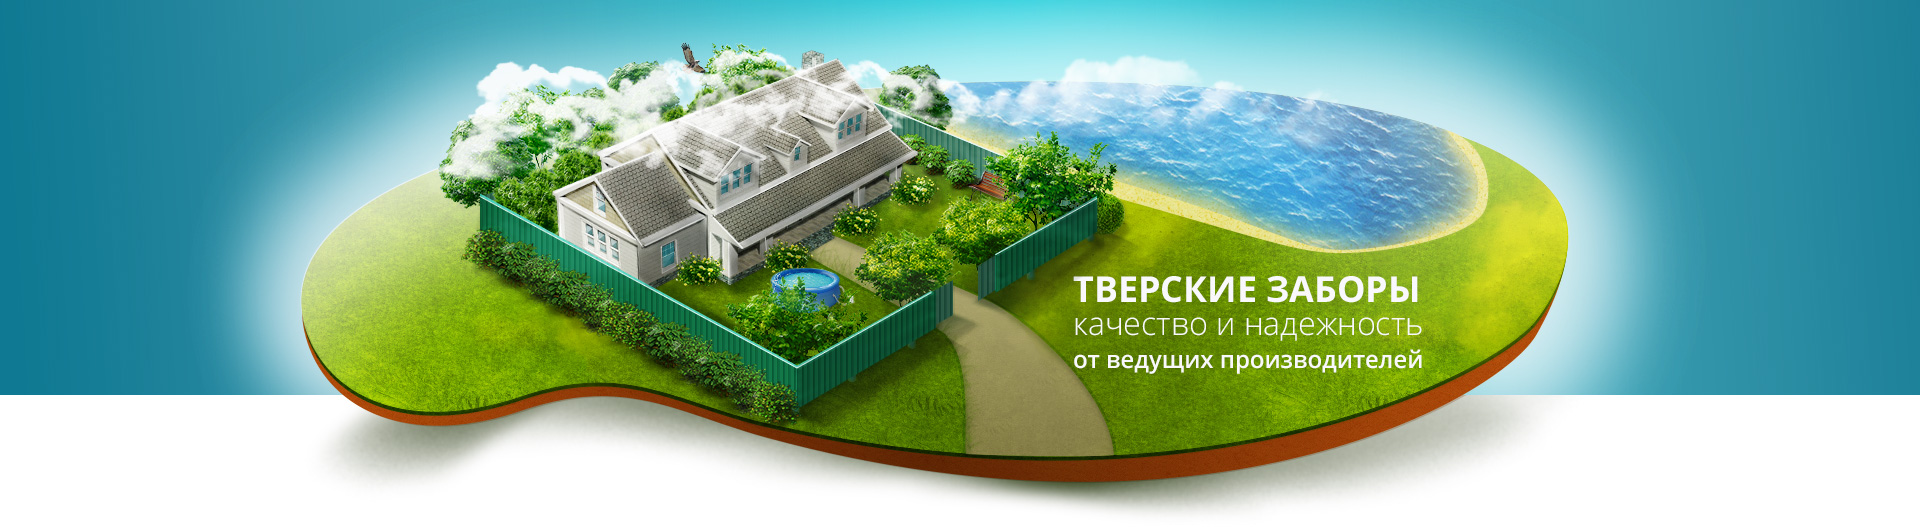 Строительство заборов в Твери и Тверской области, узнать цены и купить